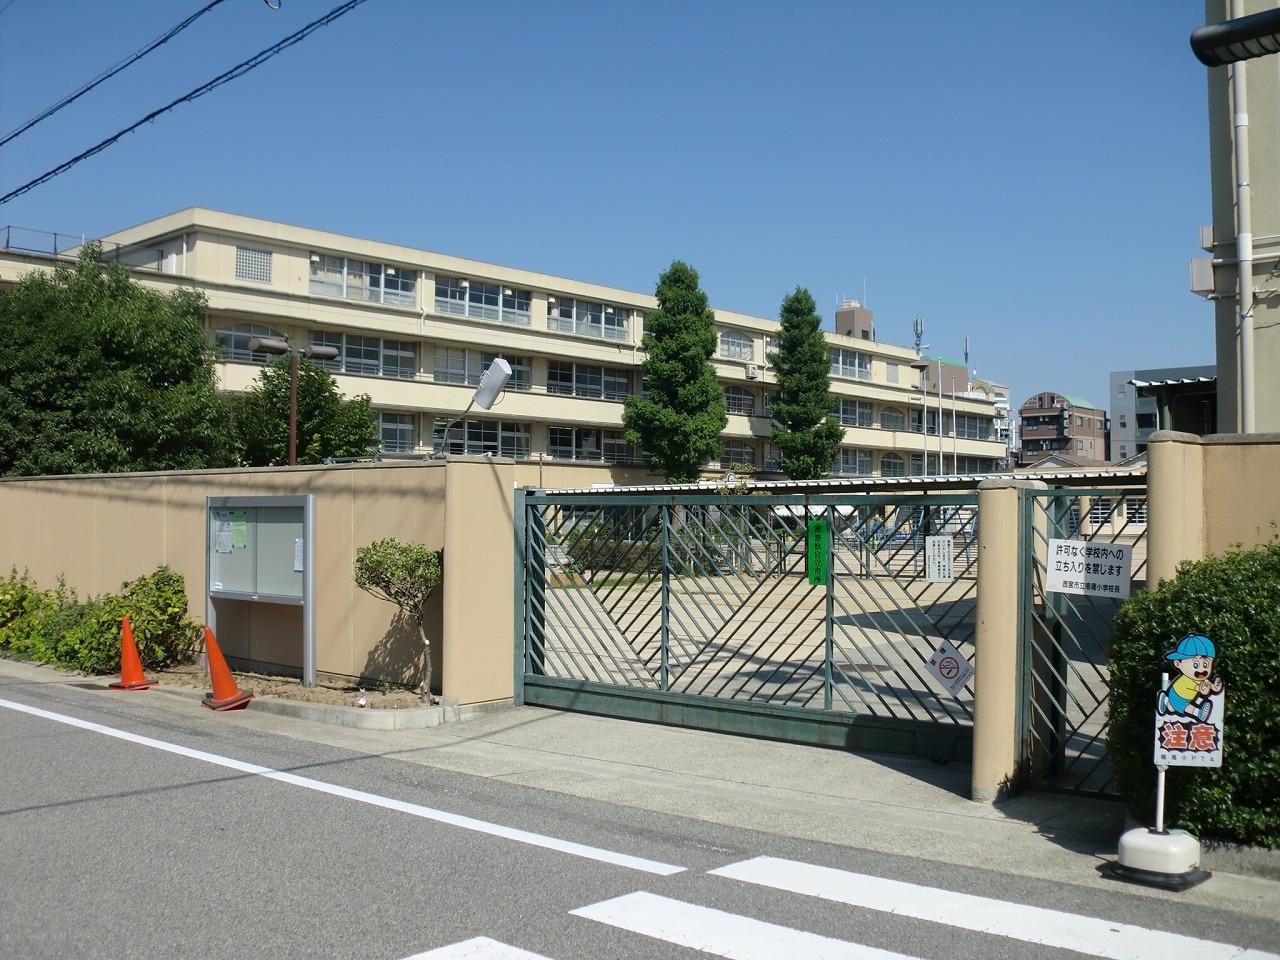 Primary school. 465m to Nishinomiya Municipal Naruo elementary school (elementary school)